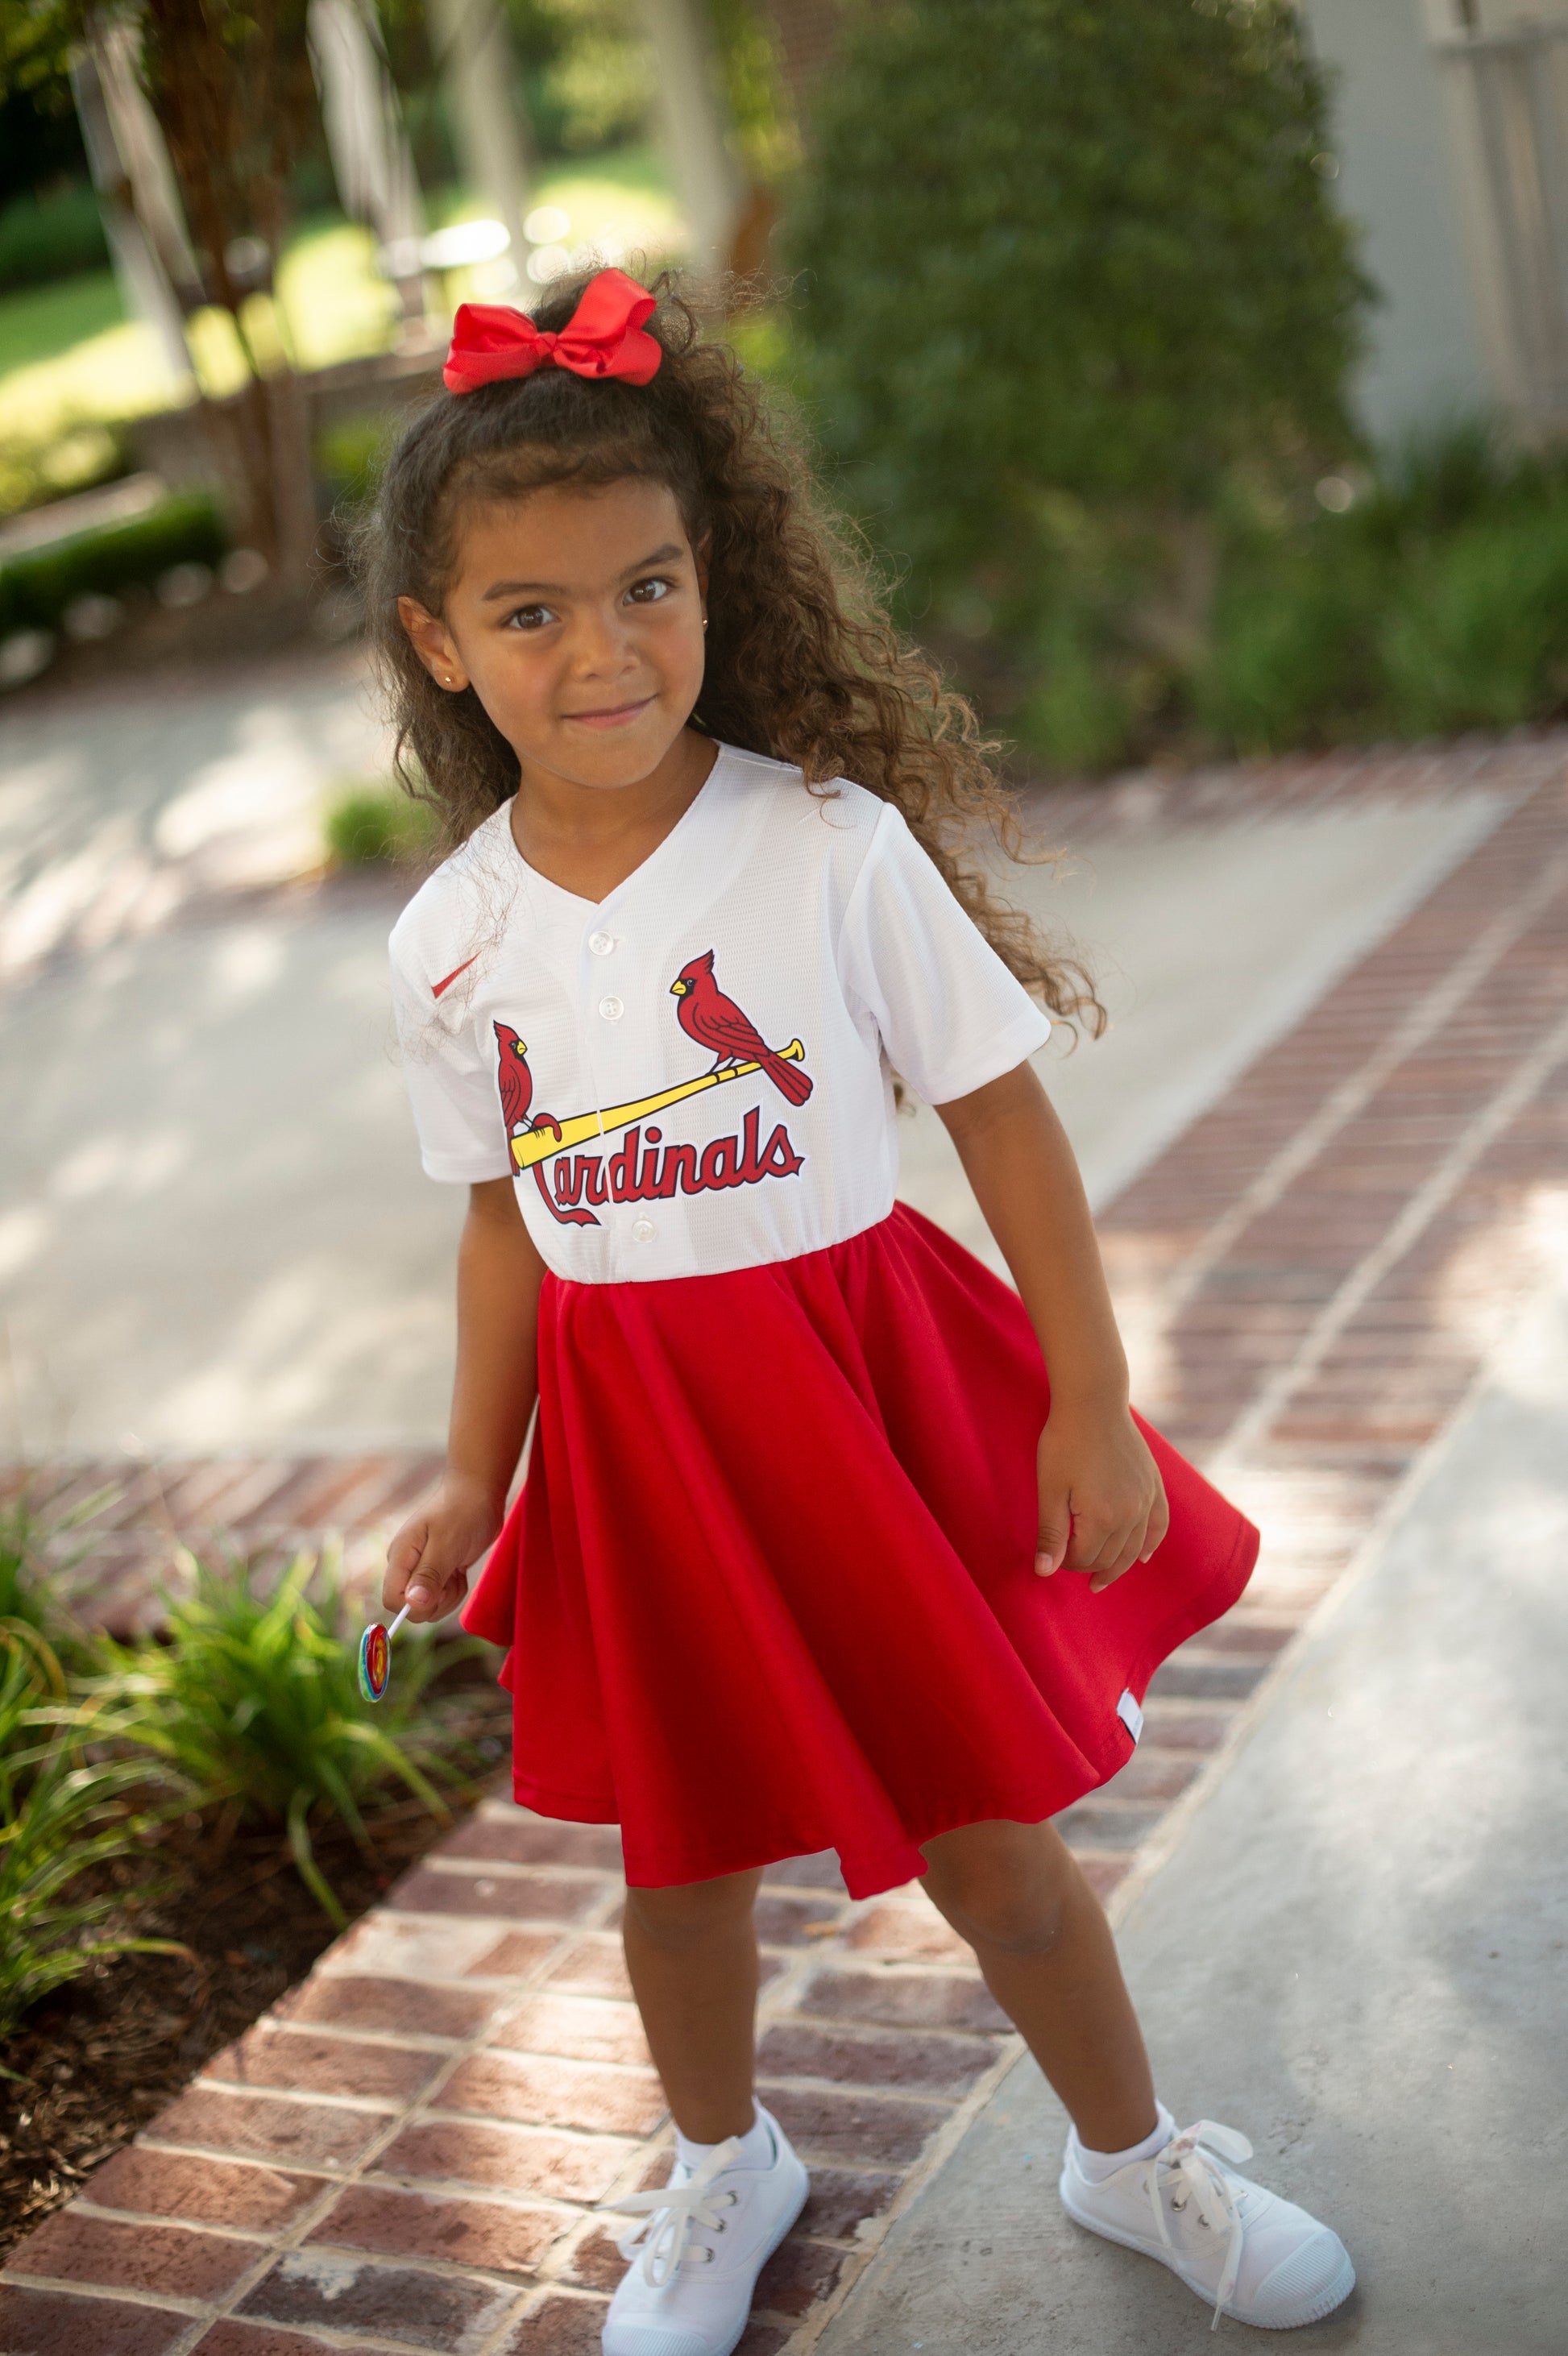 st. louis cardinals baseball womens apparel